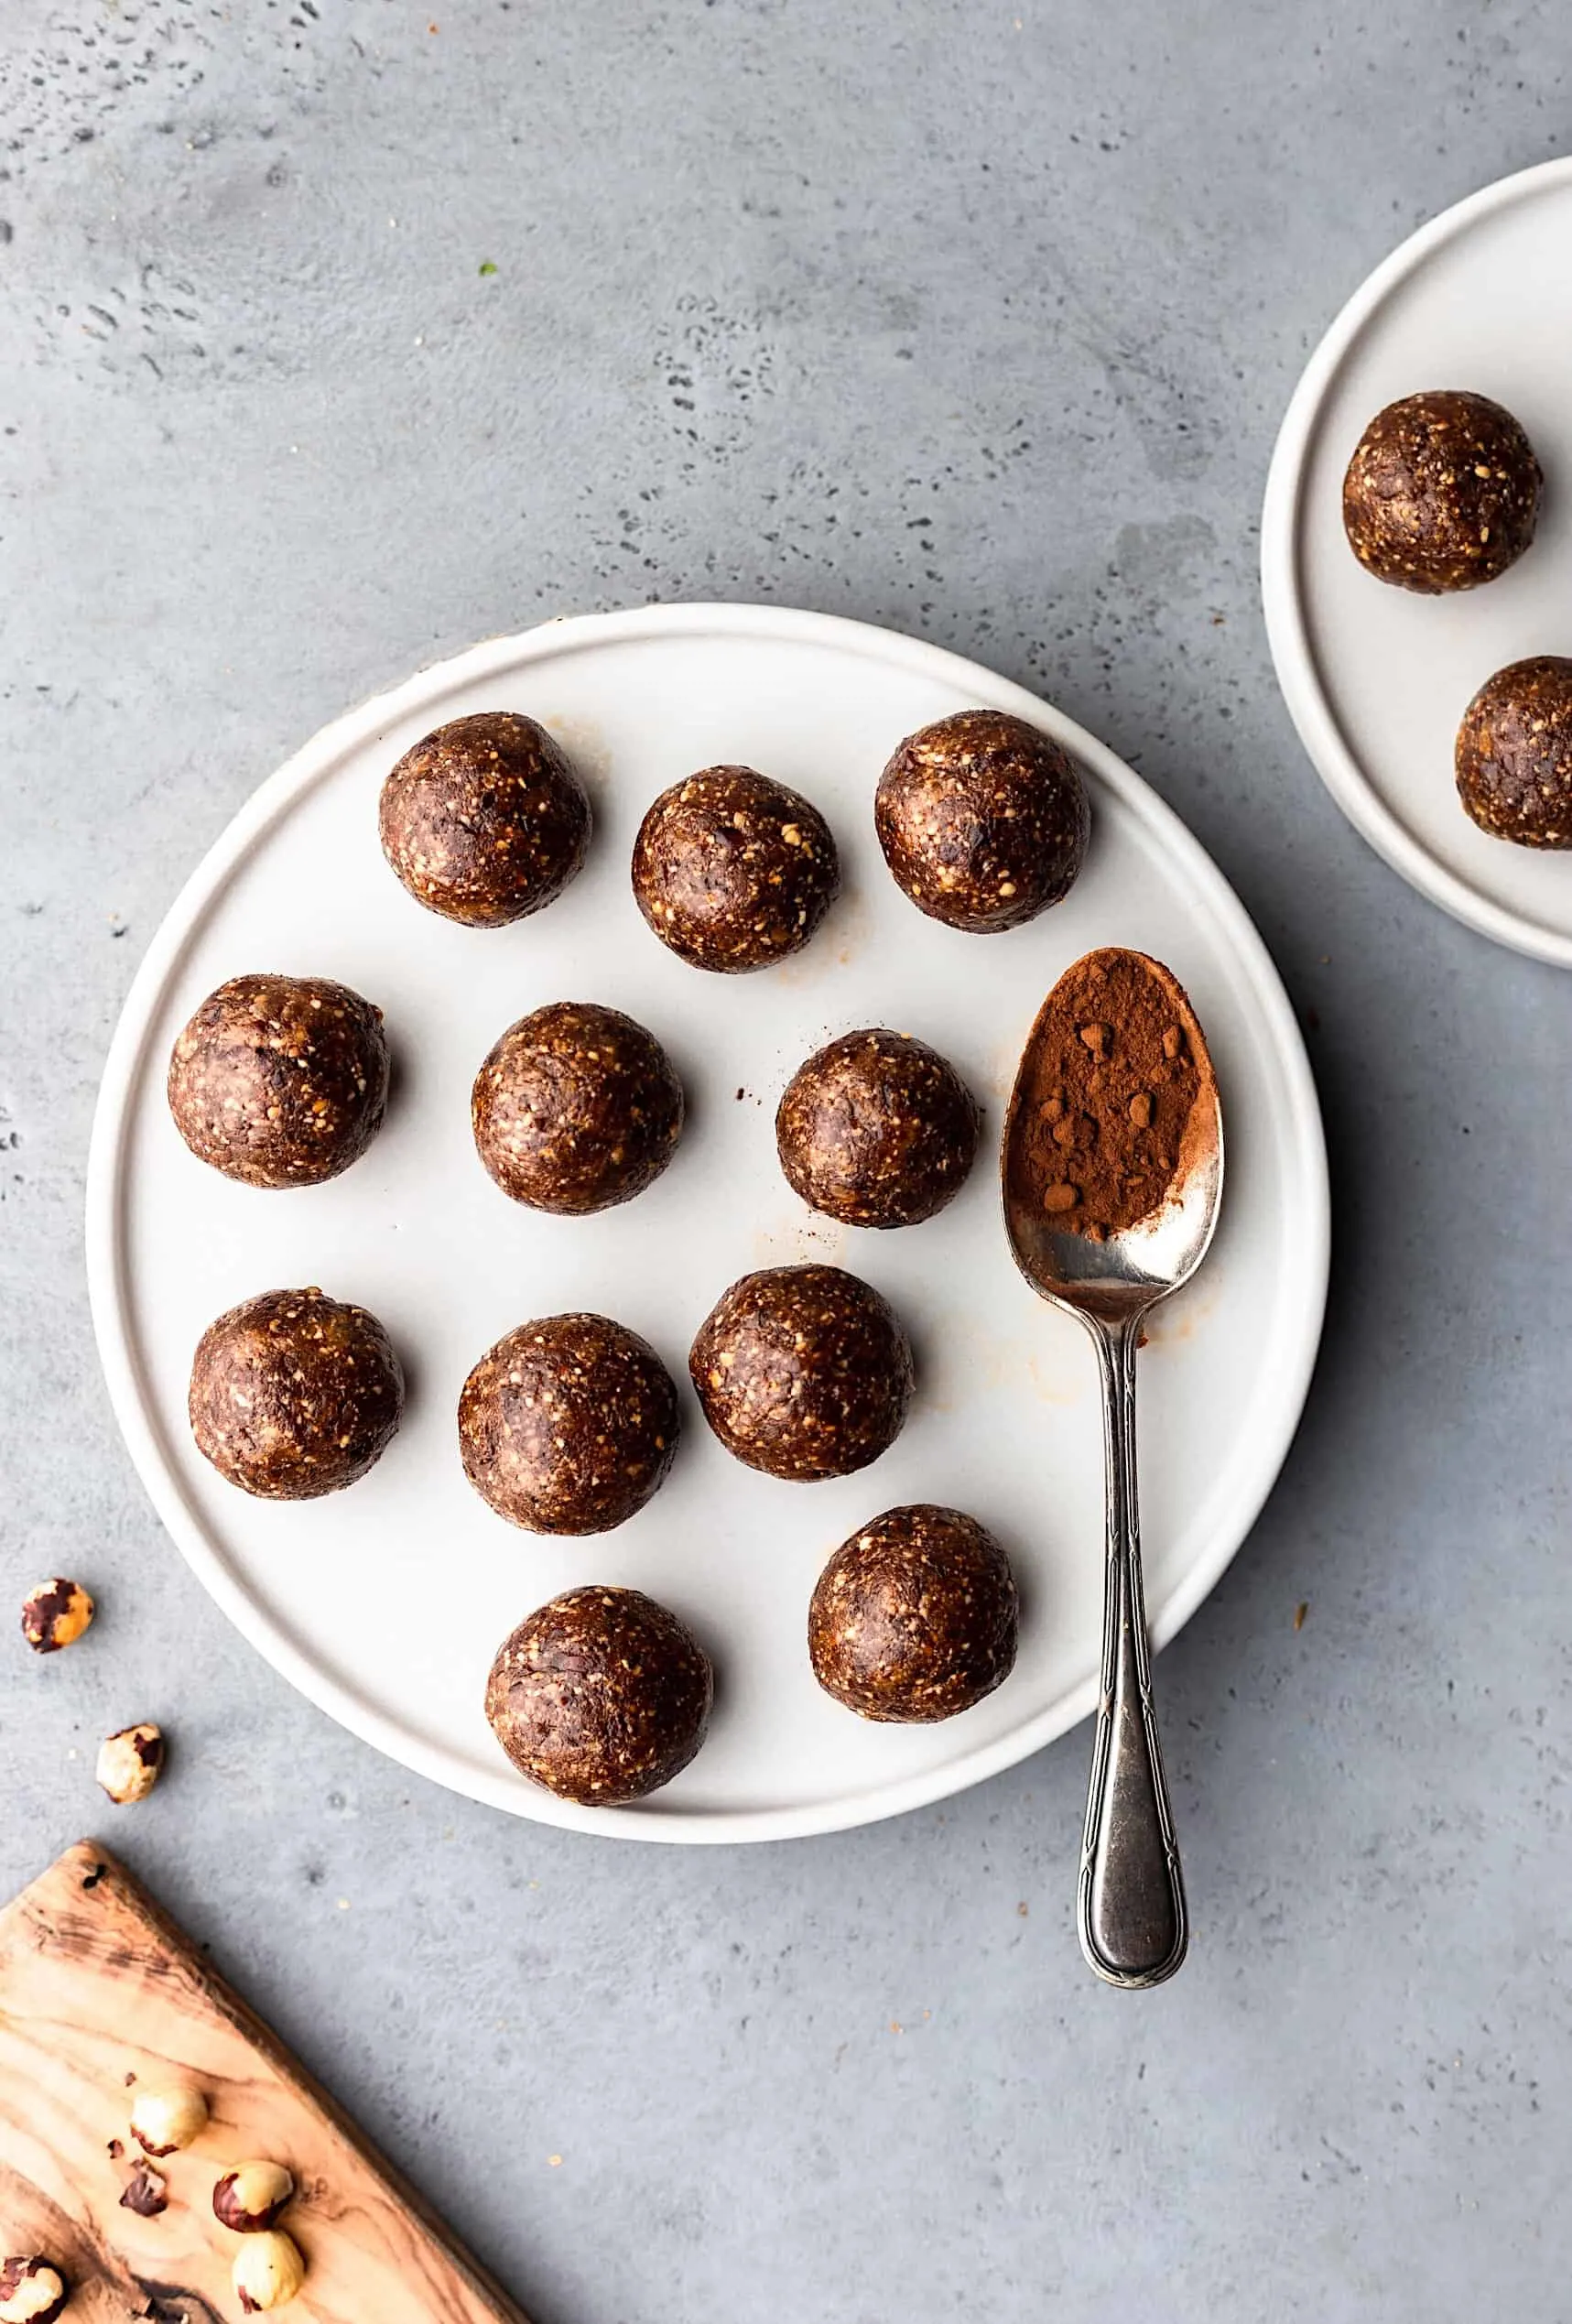 Vegan Chocolate Hazelnut Bliss Balls #vegan #recipe #energyball #blissball #chocolate #hazelnut